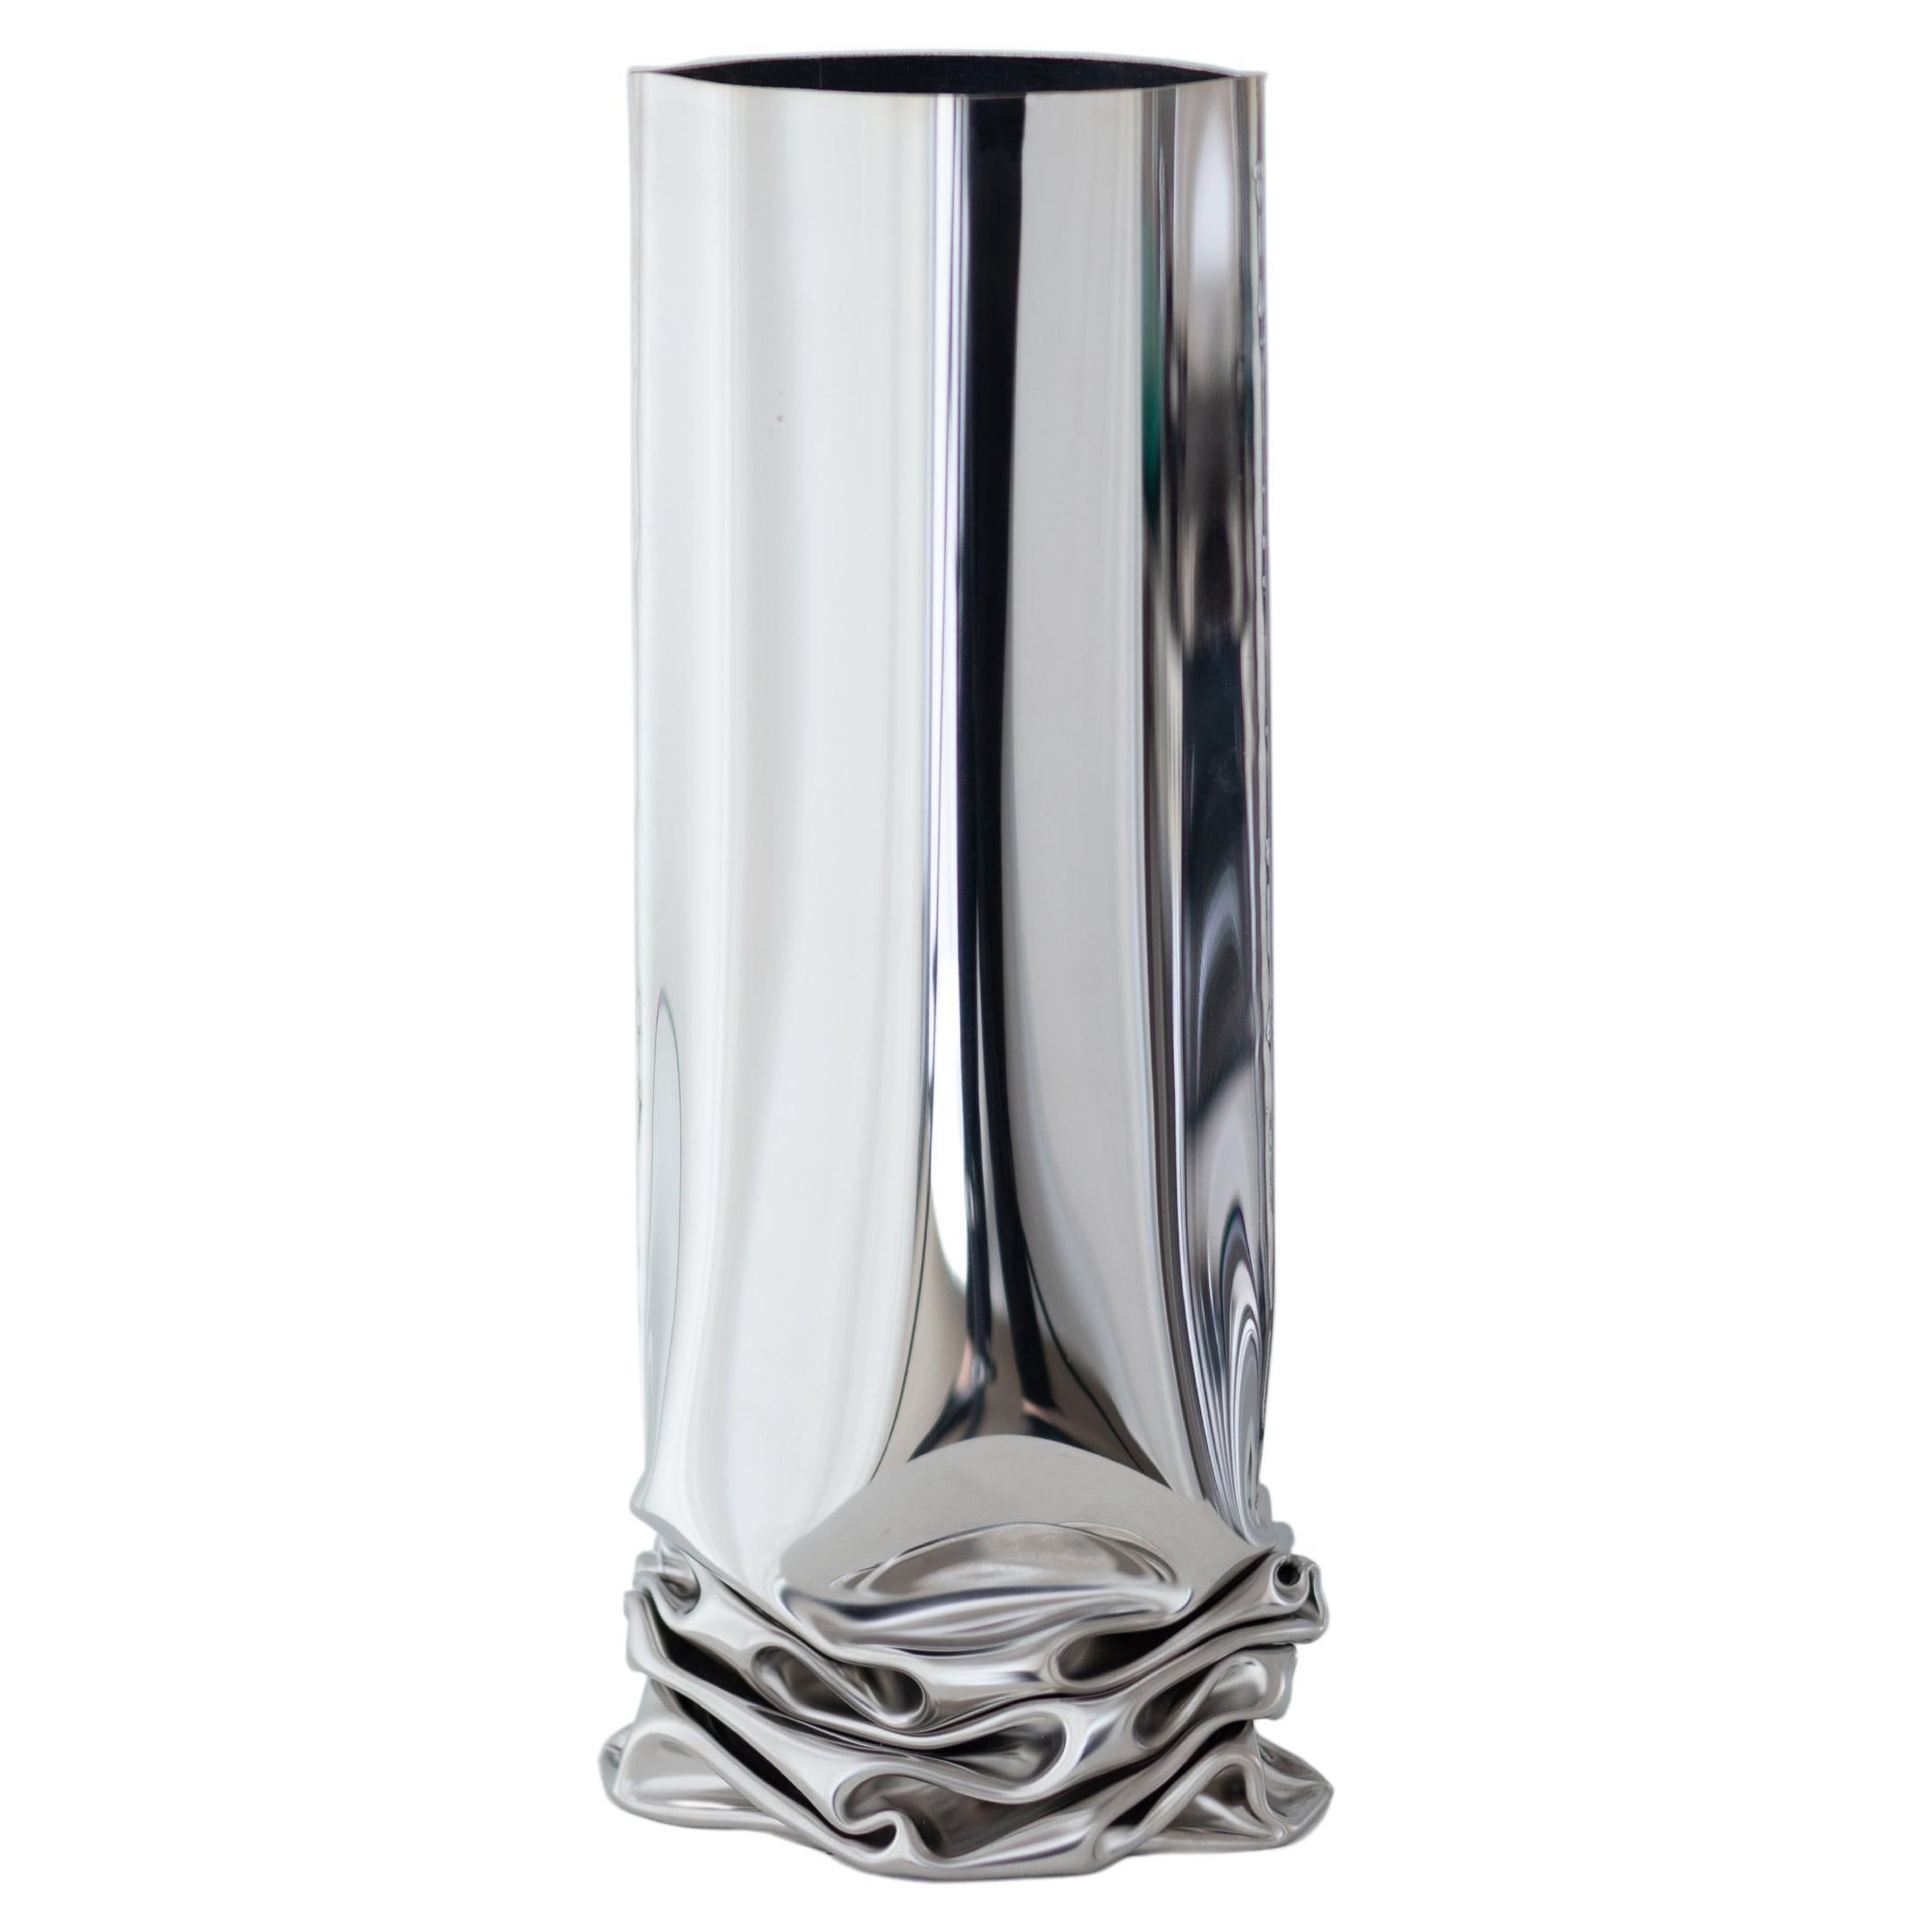 Vase contemporain, « Vaserash » de Zieta, moyen, acier inoxydable